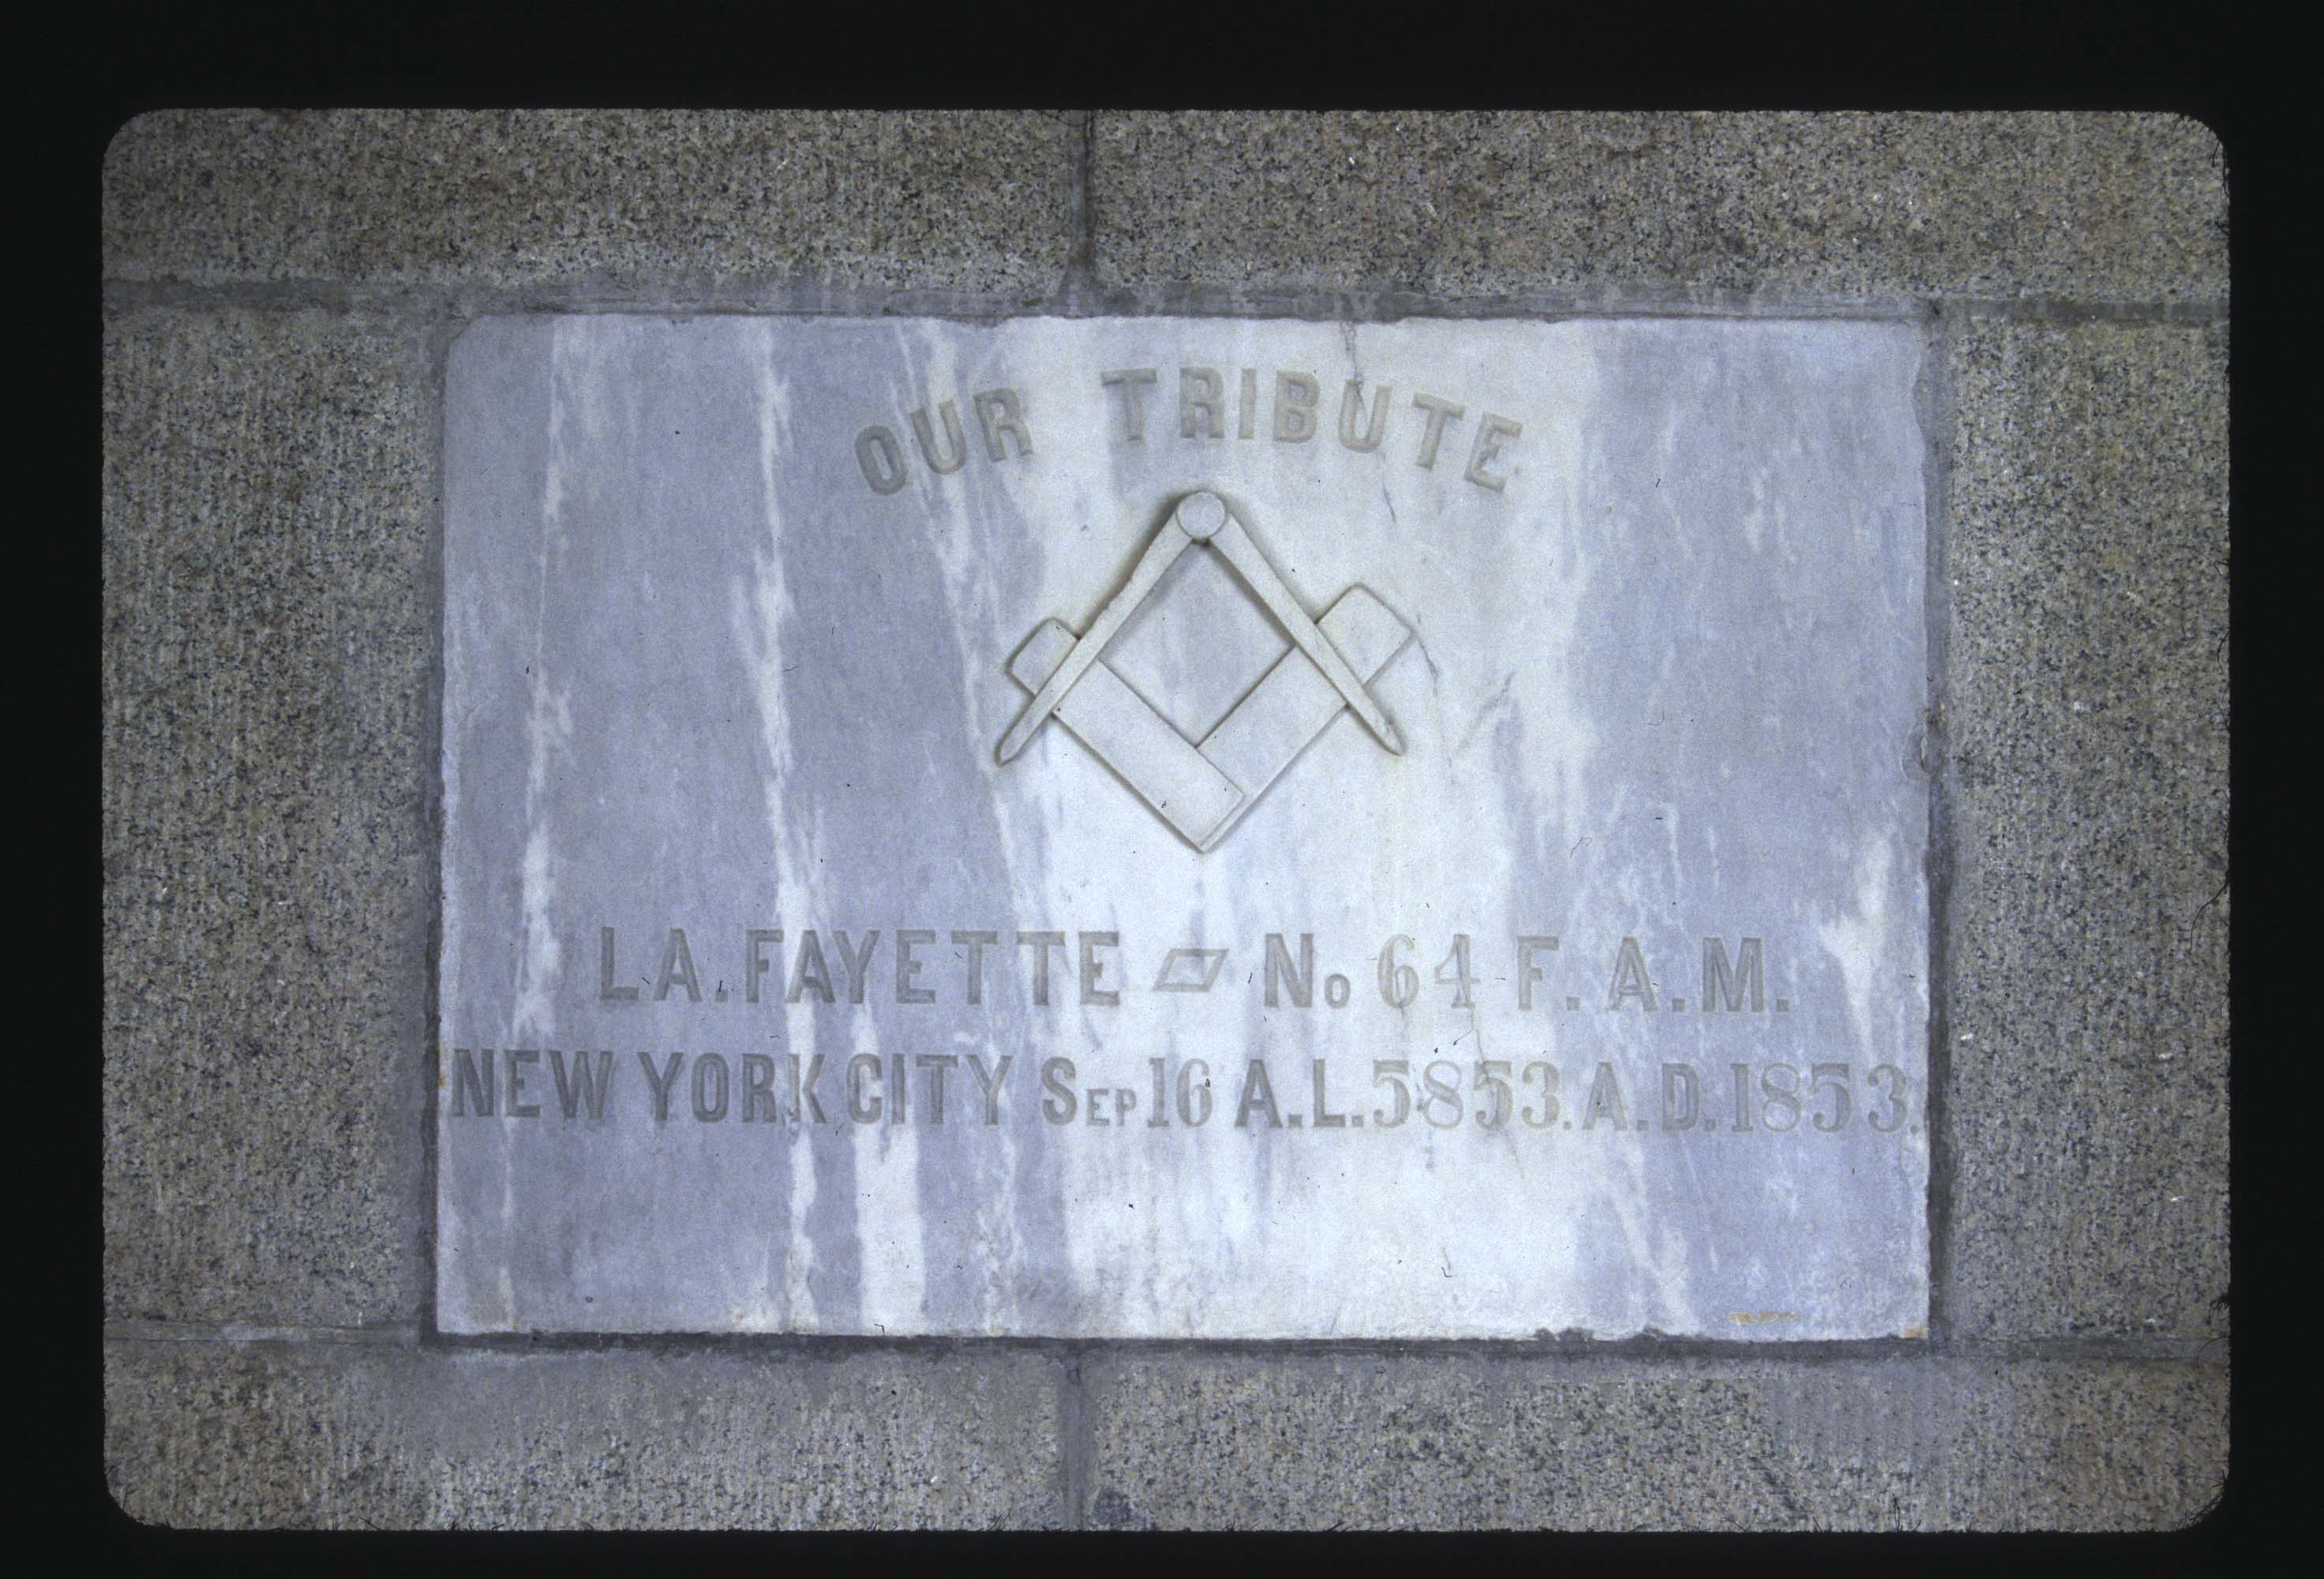 Masons, Lafayette Lodge No 64 New York